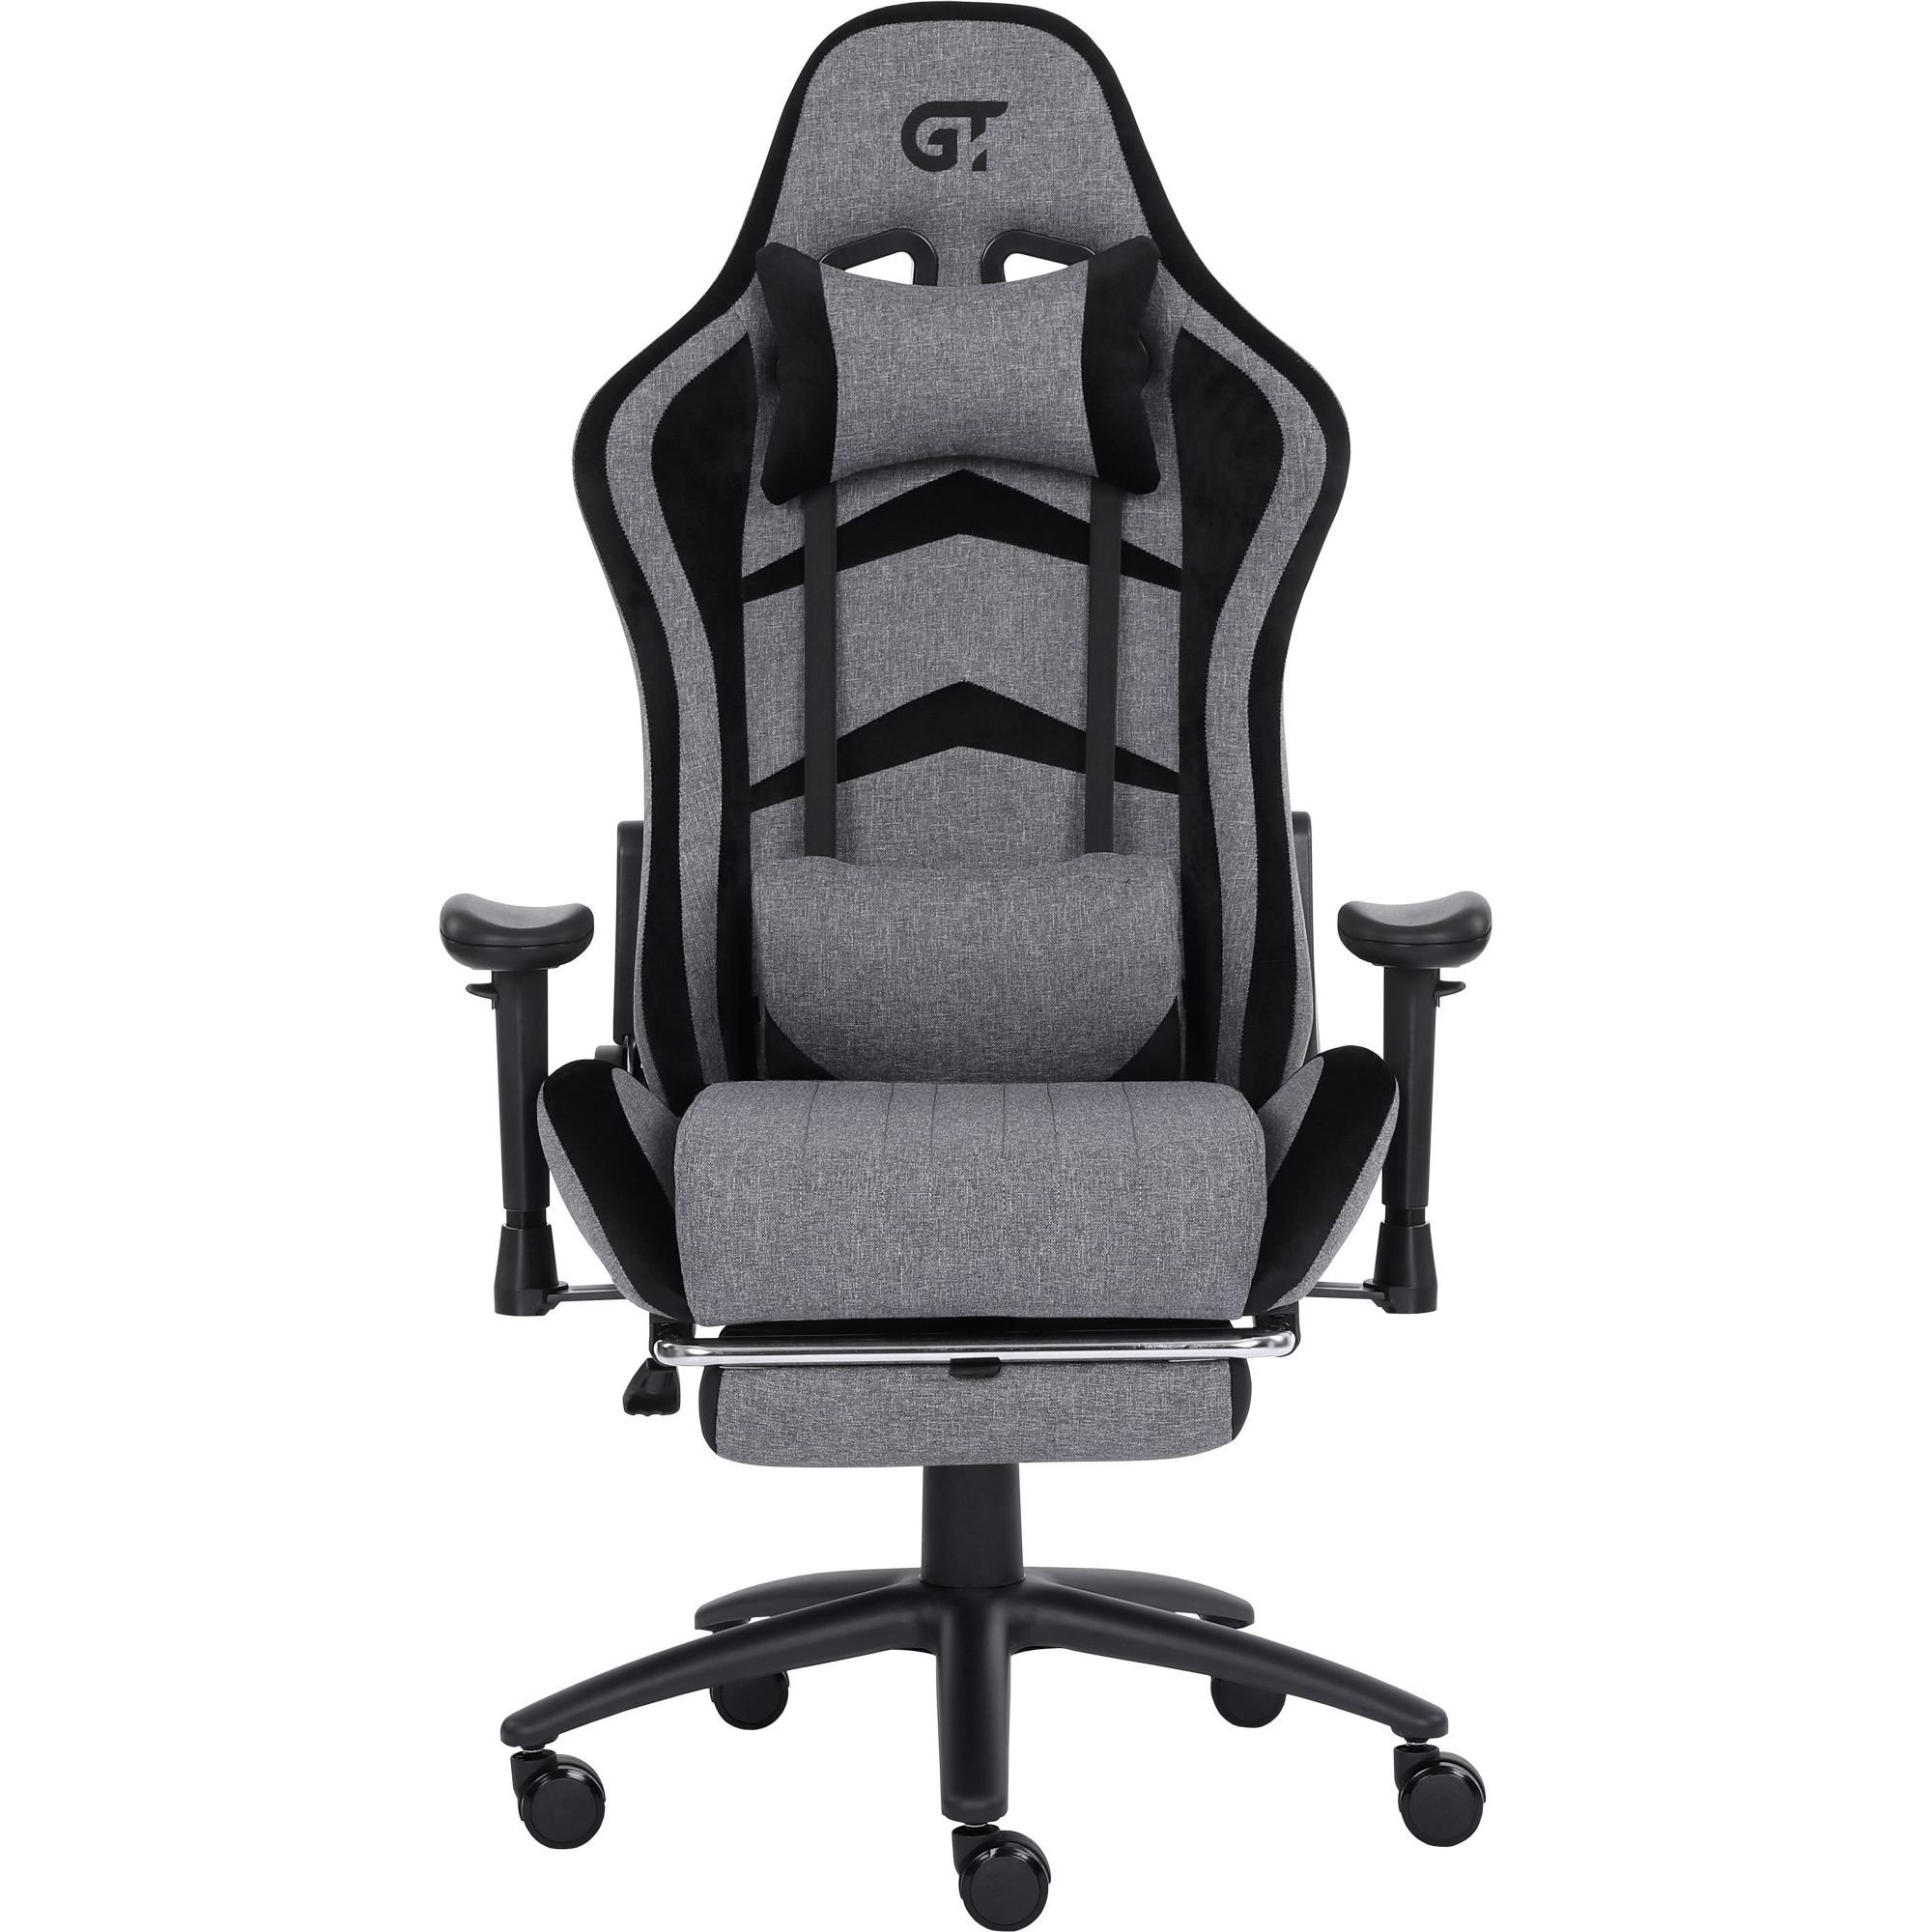 Геймерское кресло GT Racer серое с черным (X-2534-F Fabric Gray/Black Suede) - фото 1